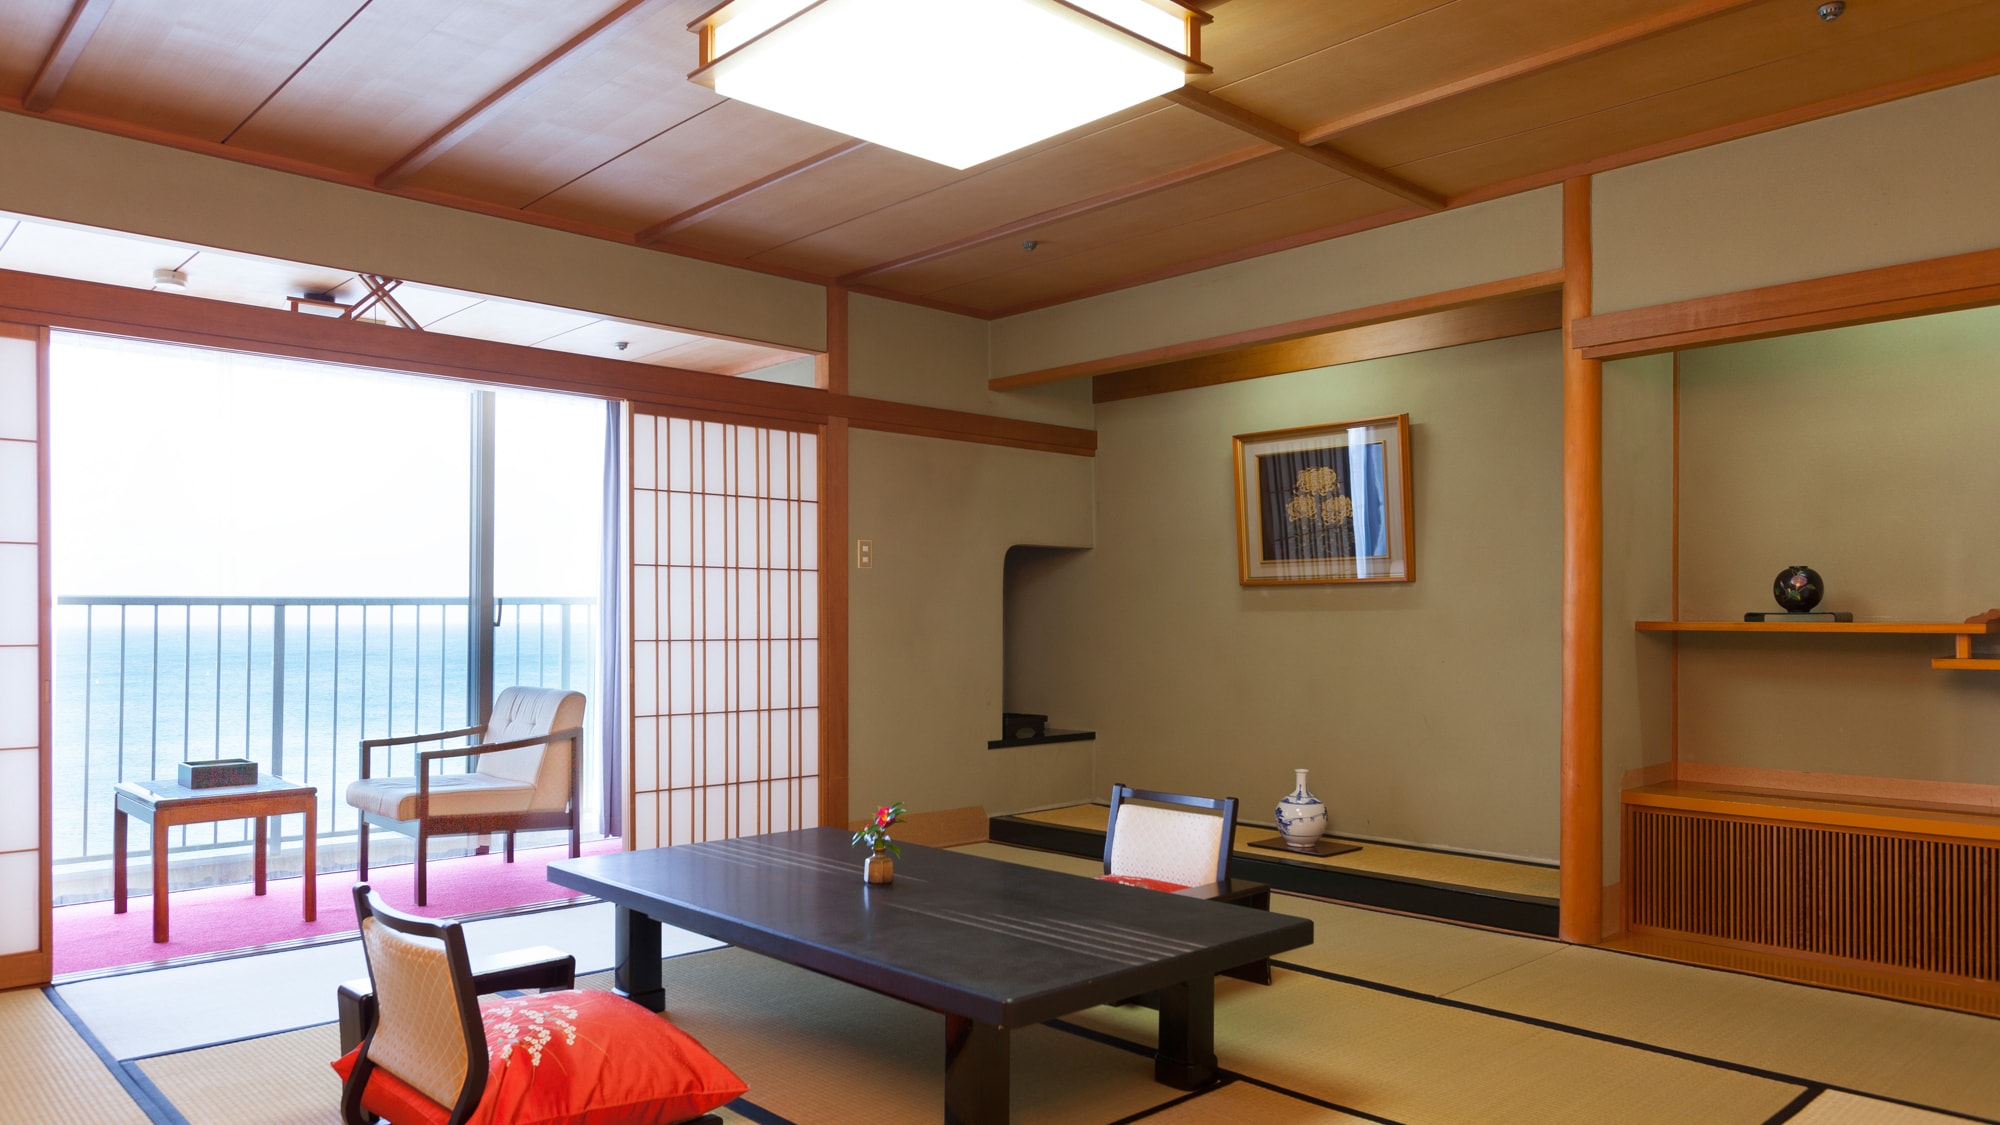 ◆ Special room [Hana Urushi] 12.5 tatami mats + 4.5 tatami mats with the next room